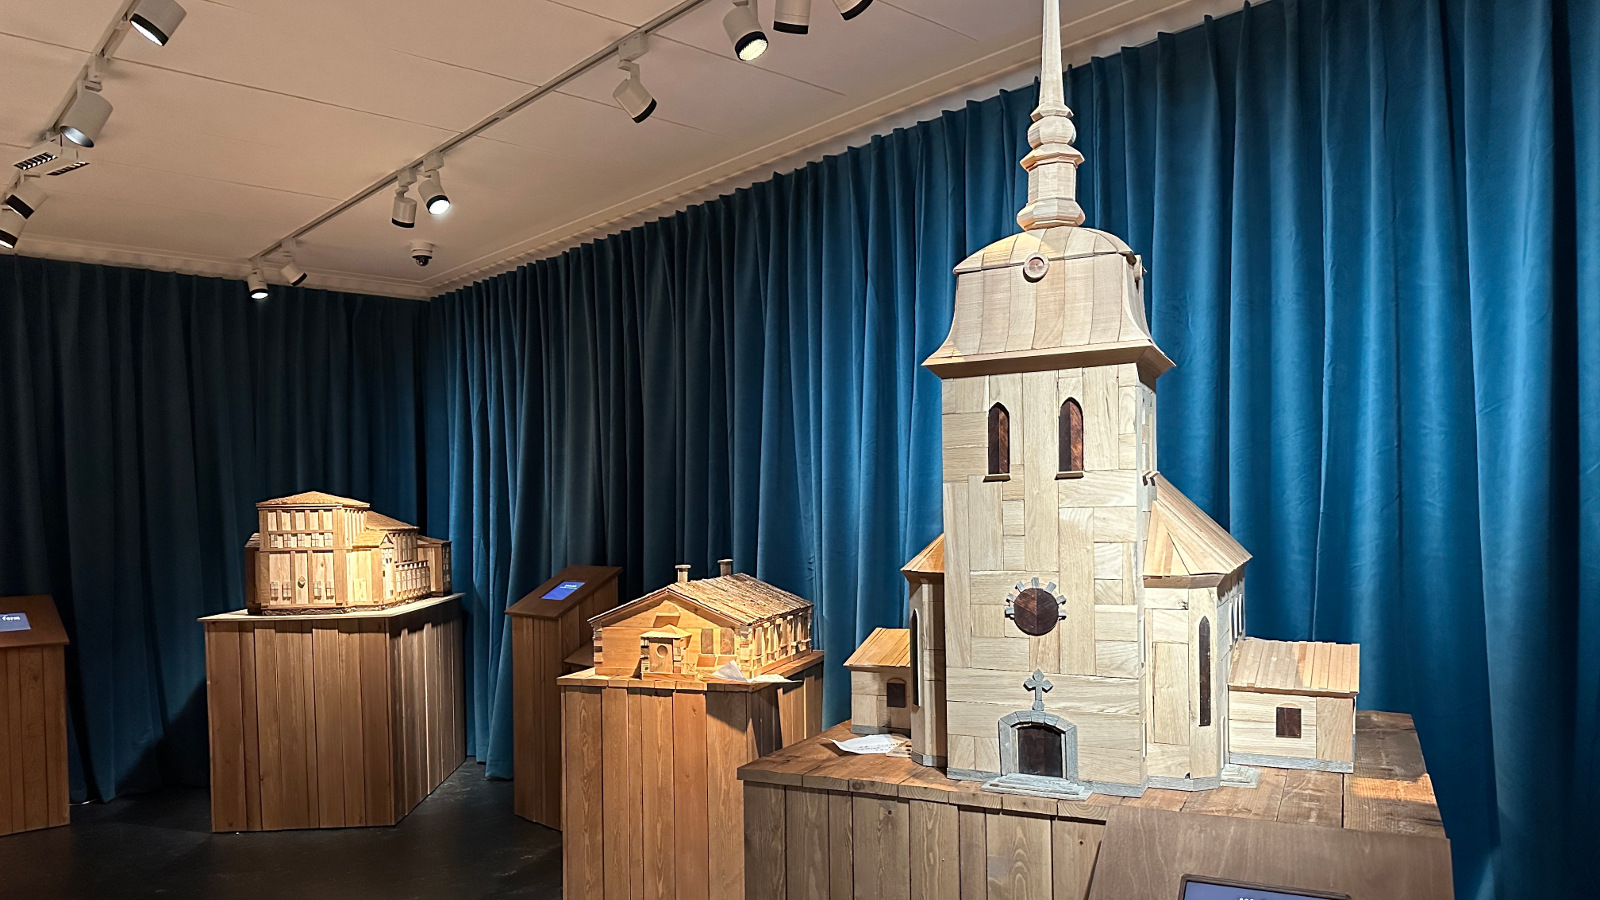 Kuvassa on siniverhoisessa näyttelytilassa puujalustojen päällä puisia pienoismalleja vanhoista rakennuksista. Oikealla etummaisena on Mäntän kirkko.